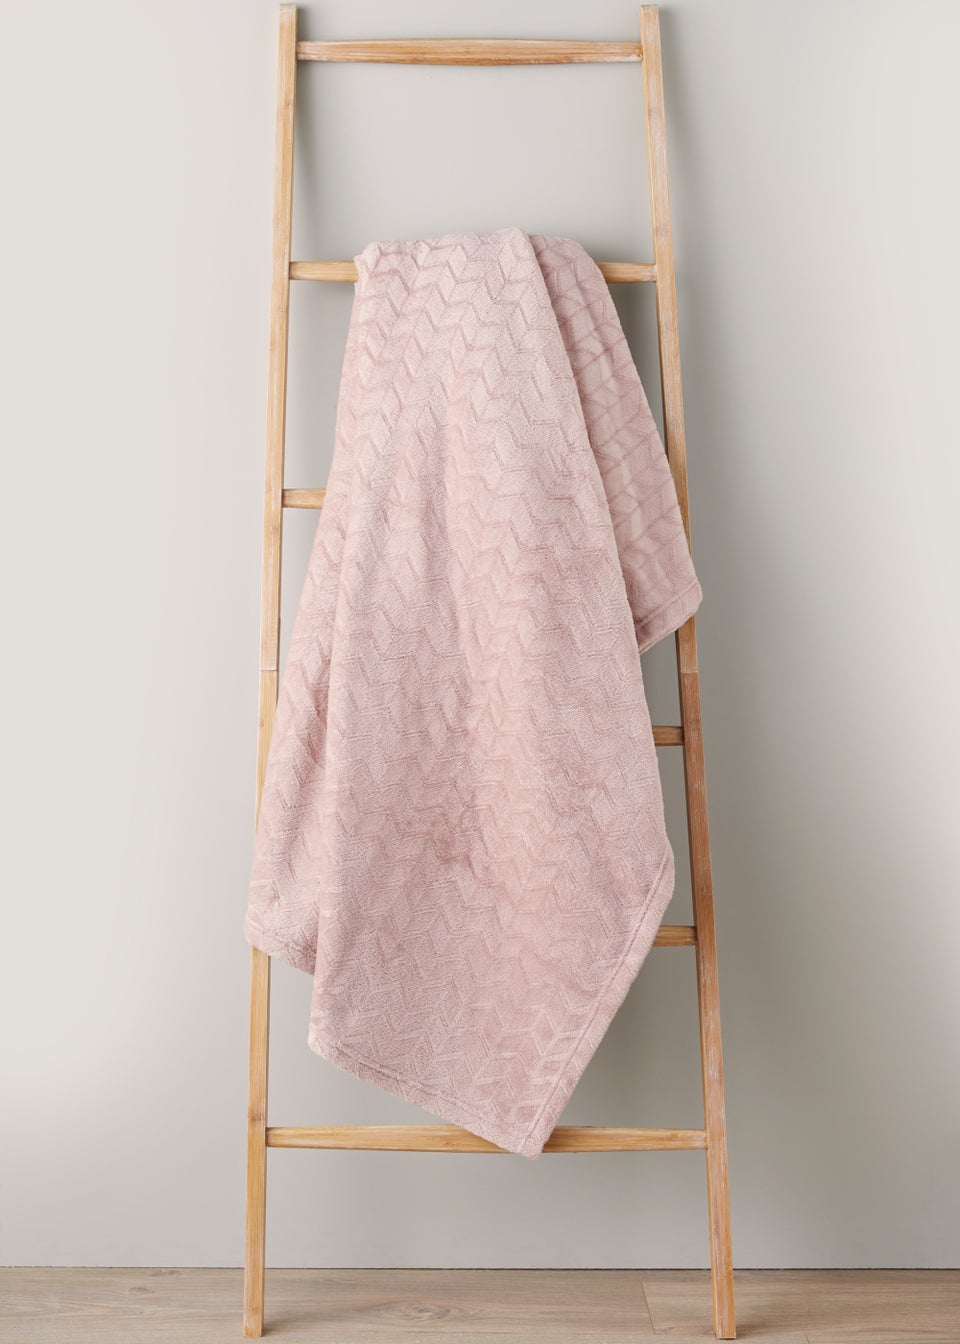 Pink Embossed Fleece Throw (200cm x 250cm)